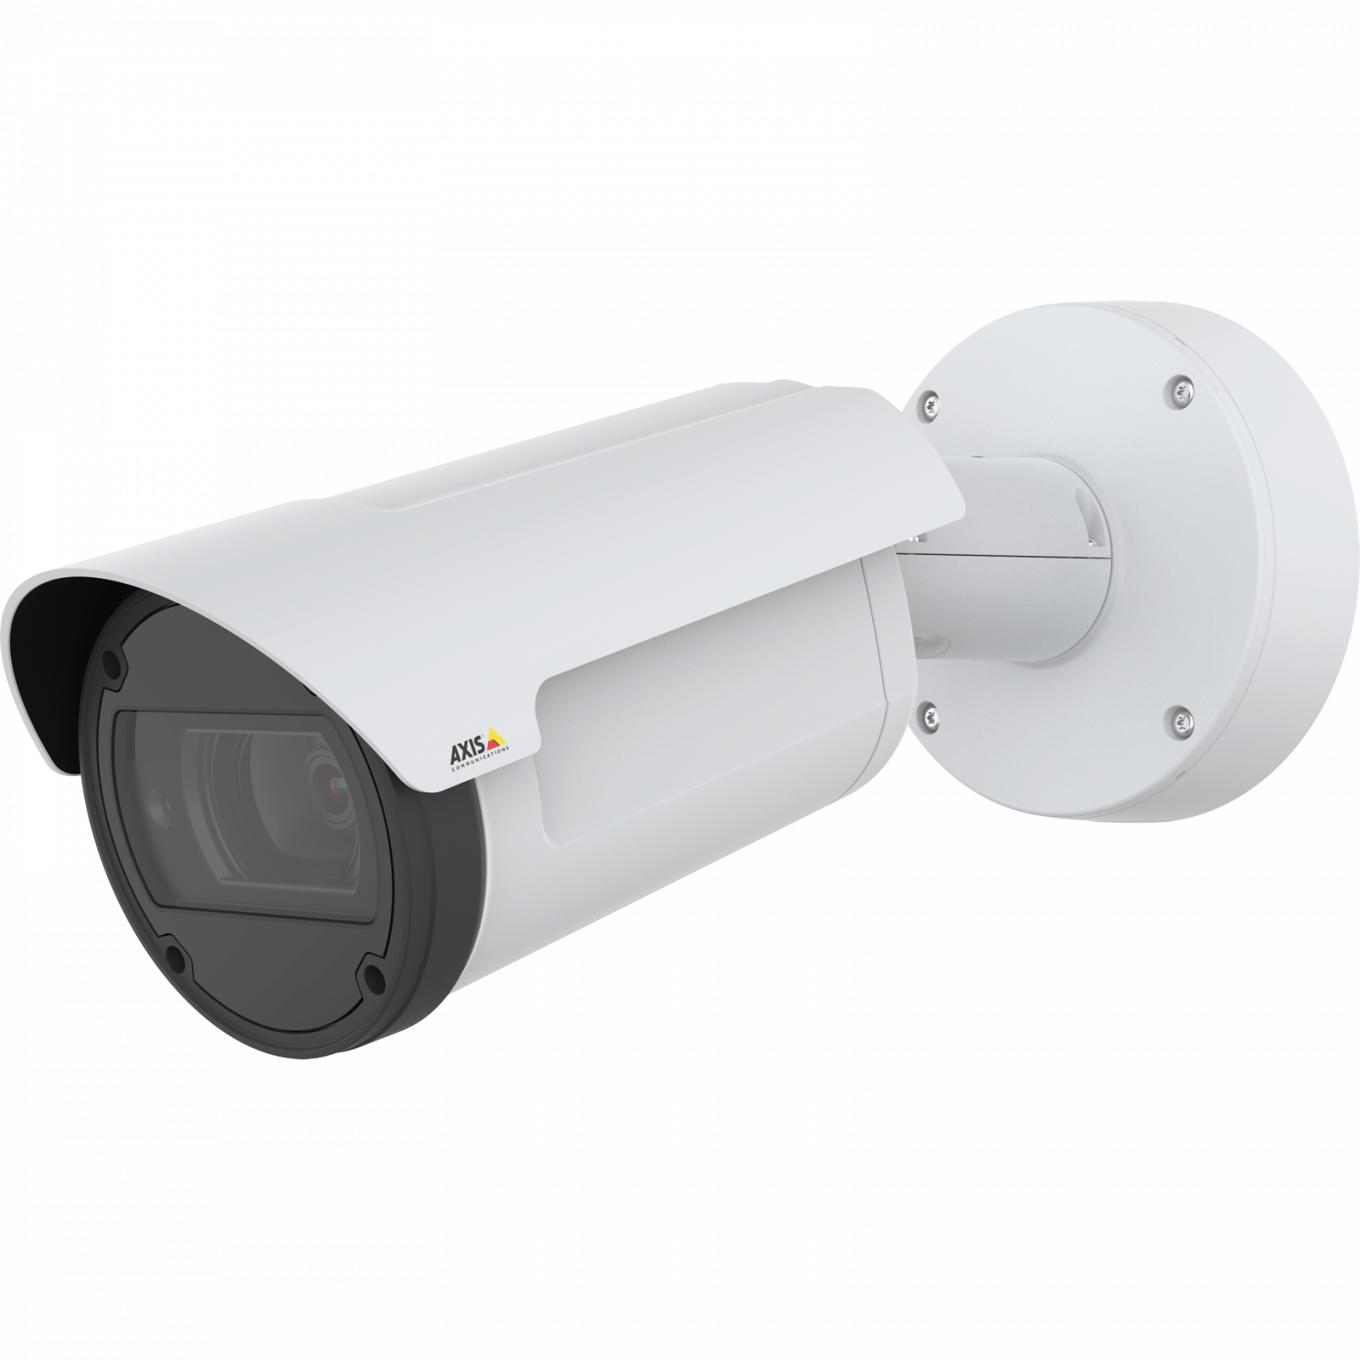 Die AXIS Q1798-LE IP Camera verfügt über Zipstream und Lightfinder. Das Produkt wird von links betrachtet.